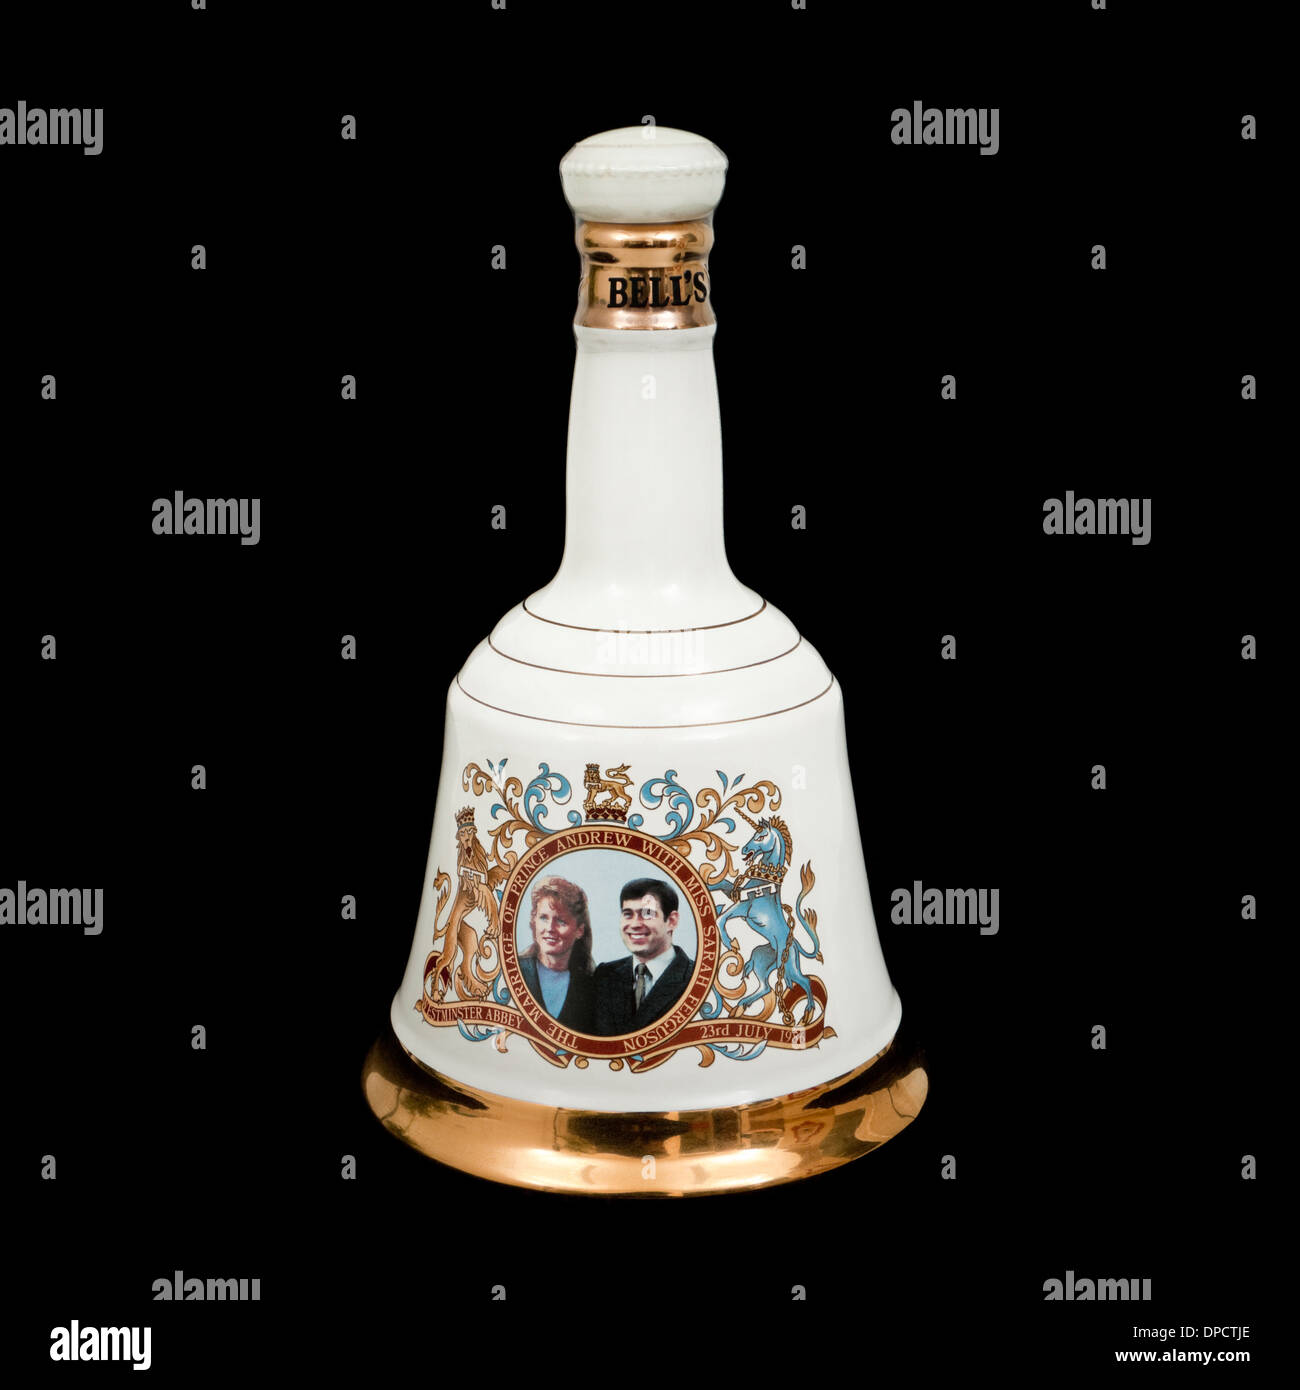 Bells Scotch Whisky Porzellan Karaffe von Wade, zum Gedenken an die Hochzeit von Prinz Andrew und Sarah Miss Ferguson gemacht Stockfoto